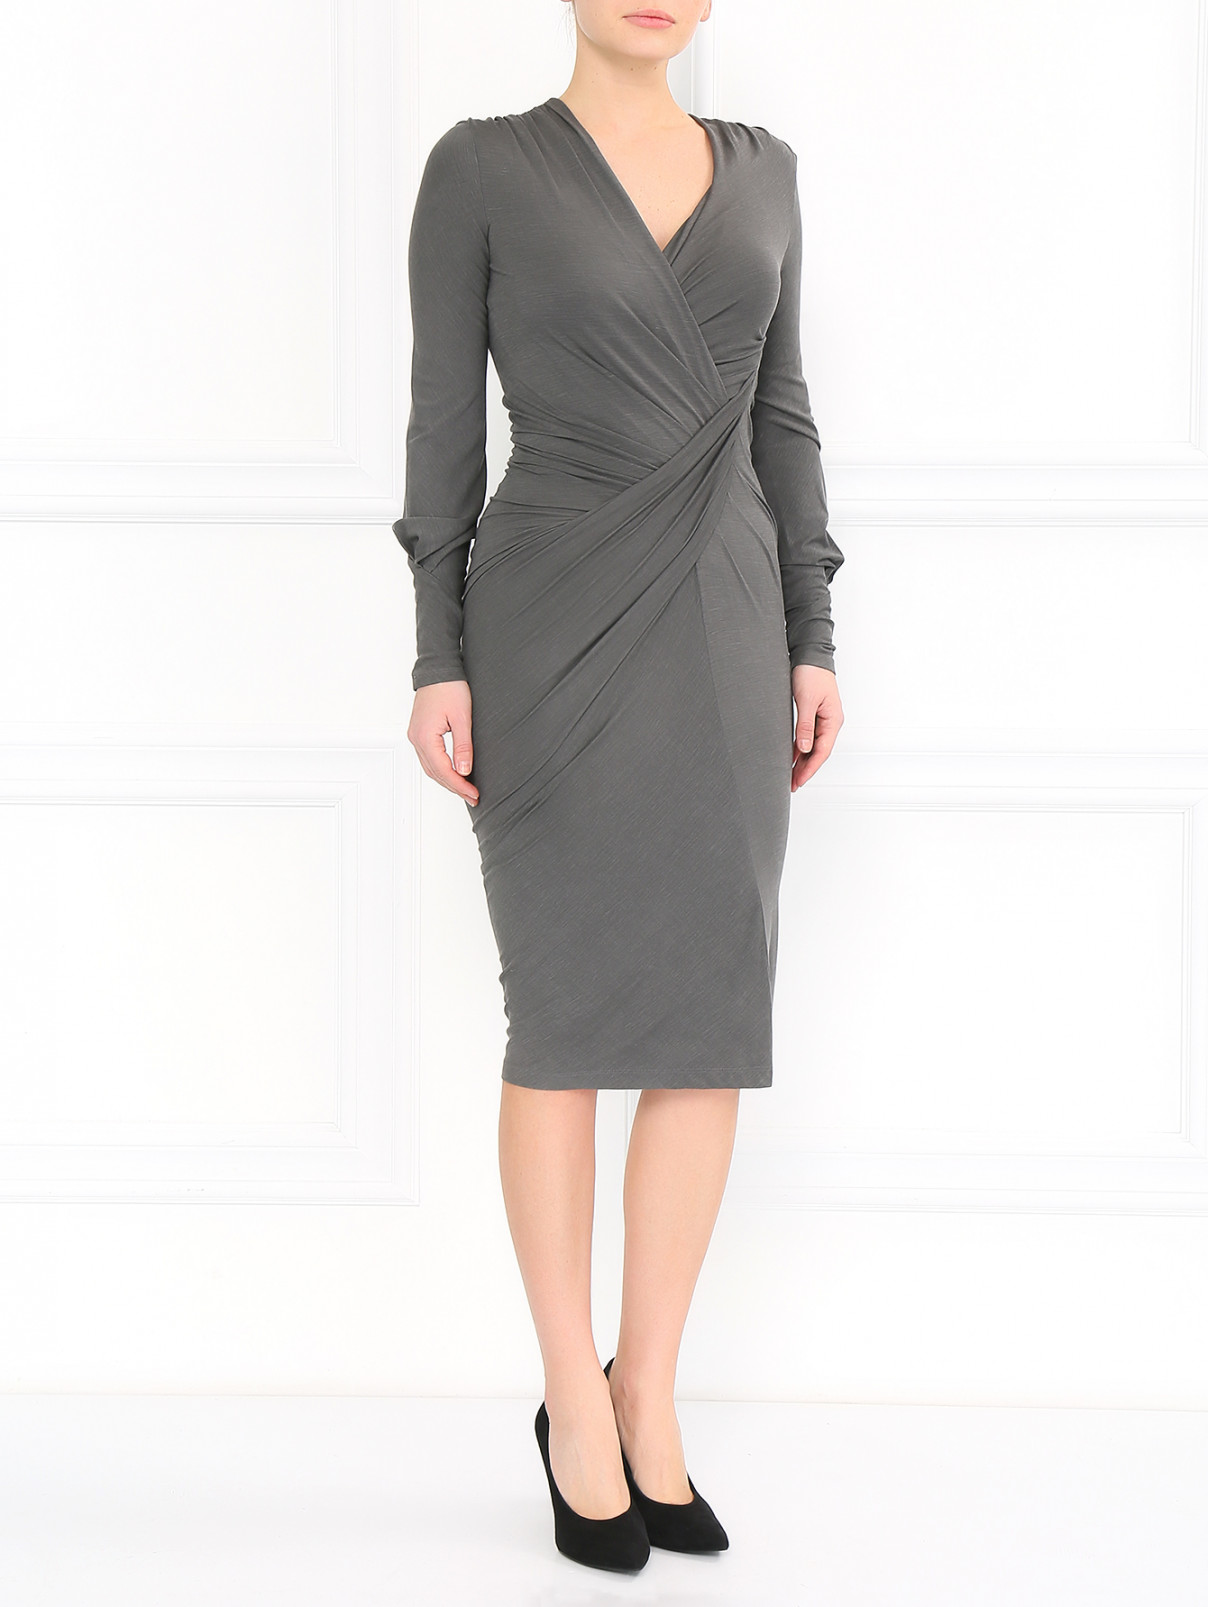 Платье с драпировкой Donna Karan  –  Модель Общий вид  – Цвет:  Серый